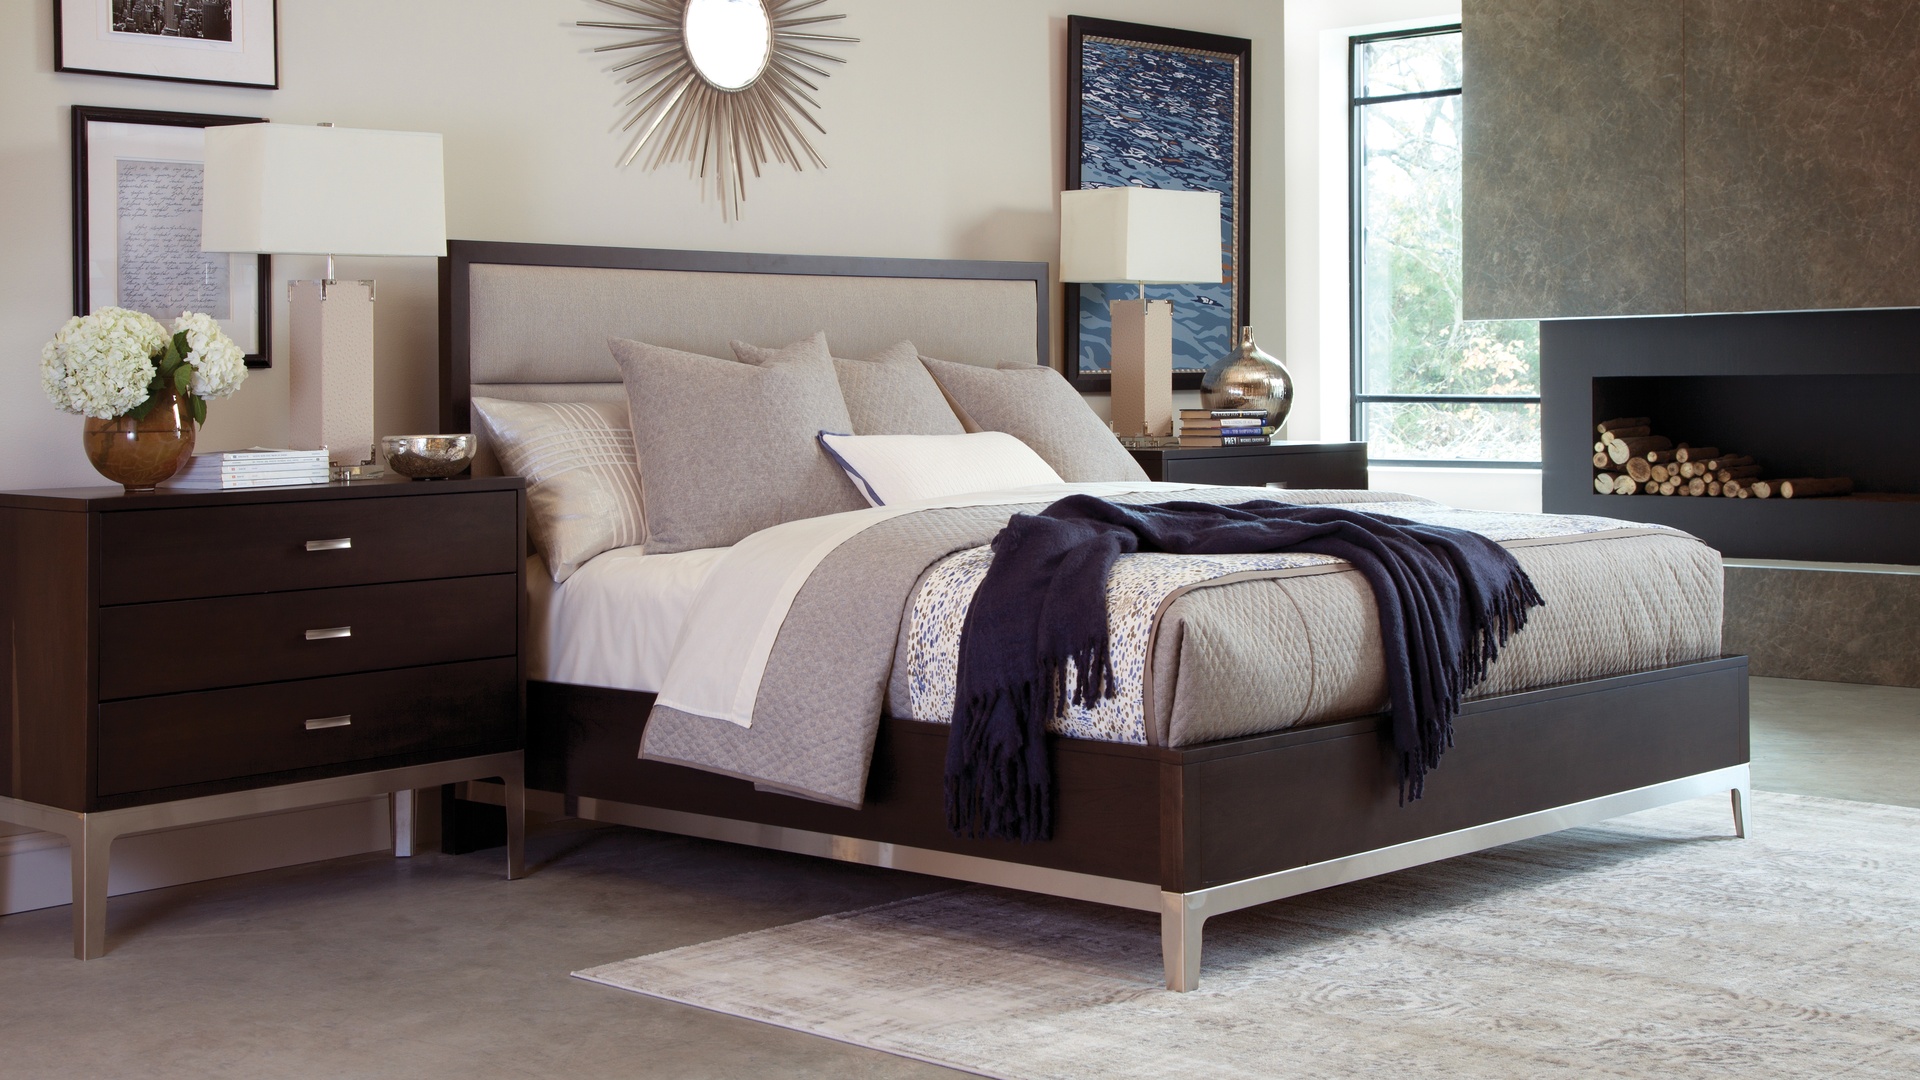 durham bedroom furniture set